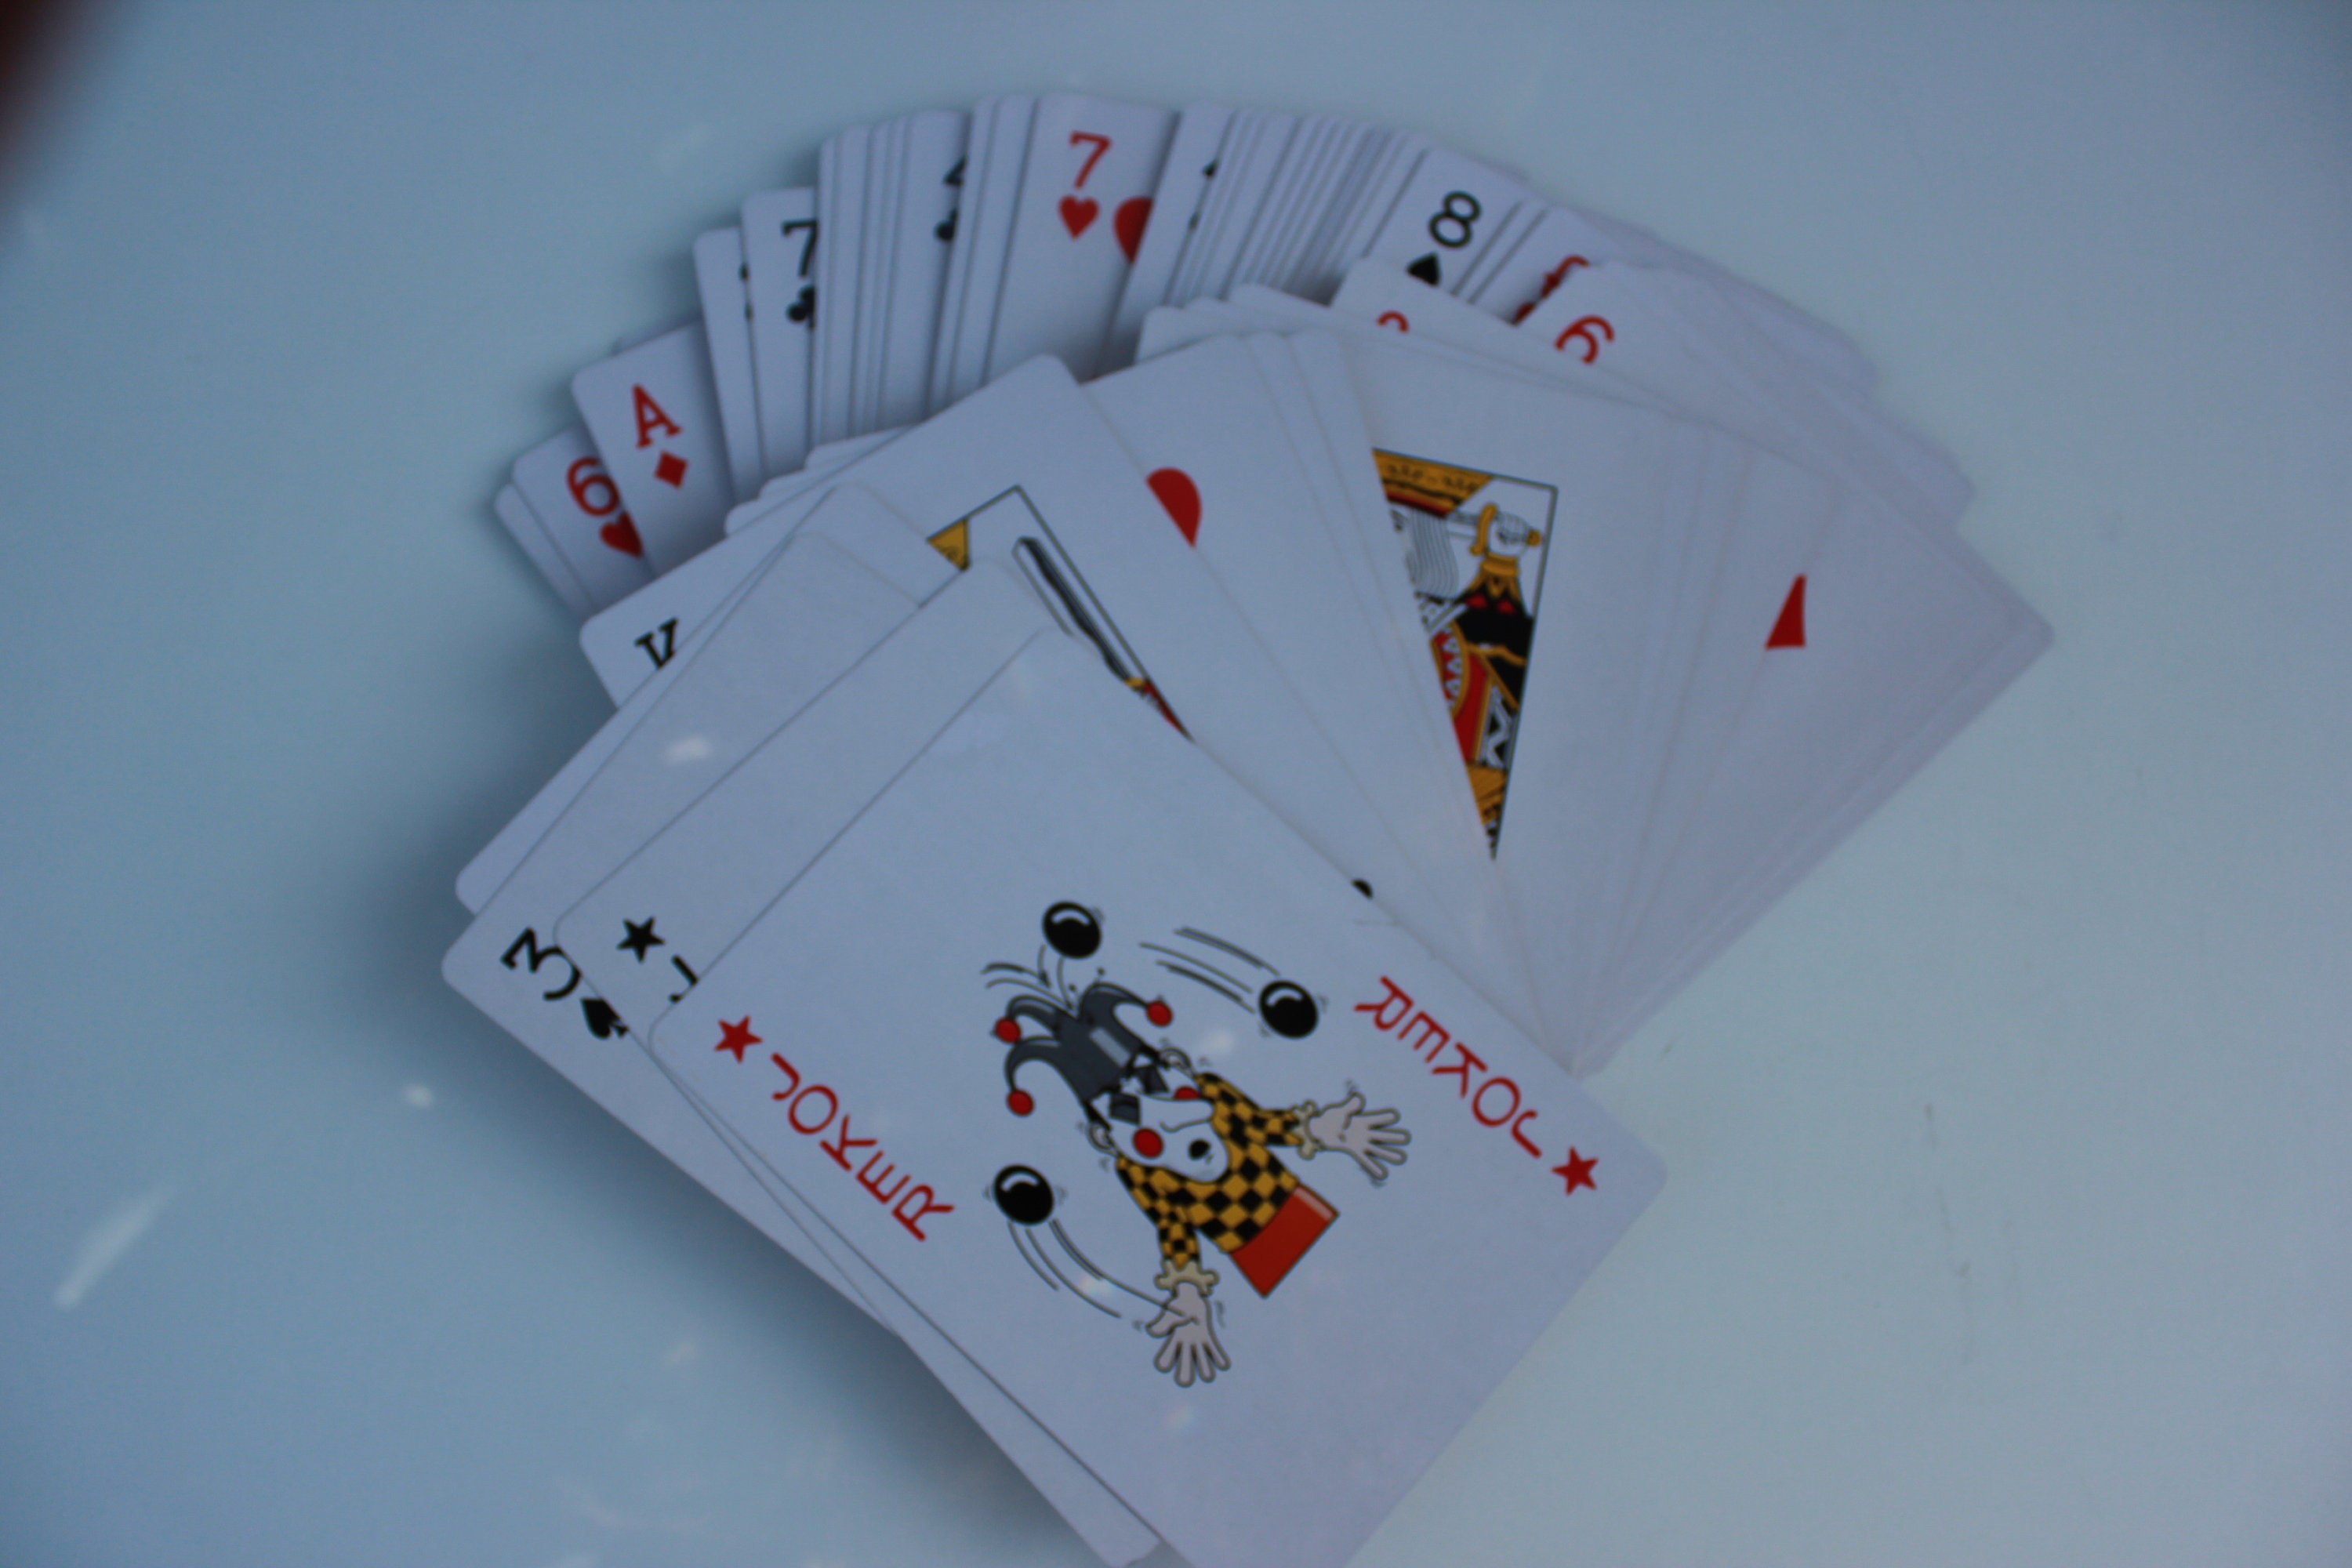 Carte à jouer poker size XXL cartes géantes - Totalcadeau